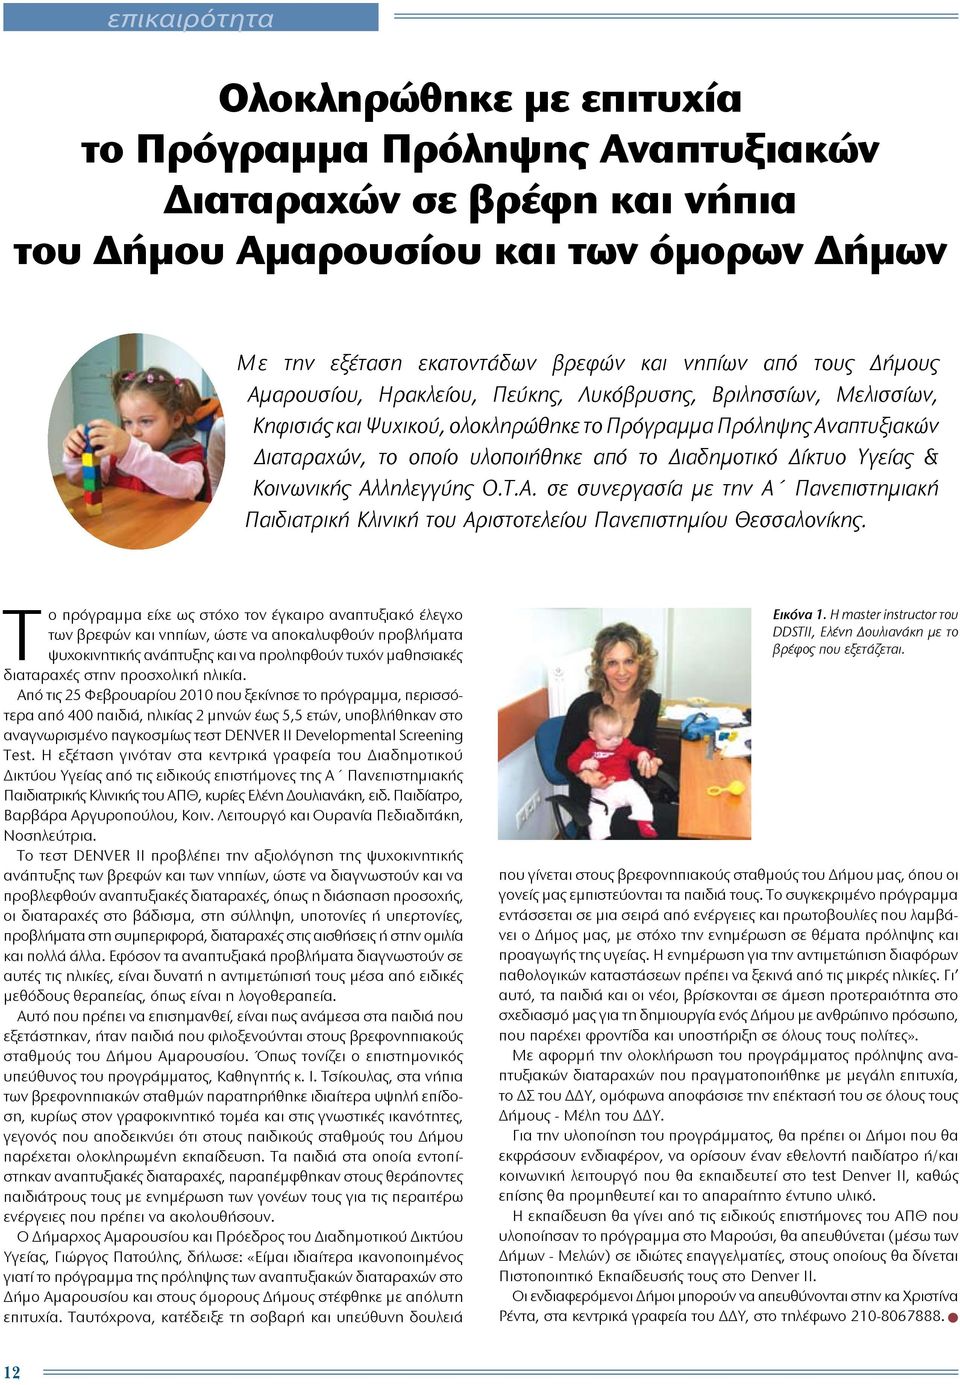 Υγείας & Κοινωνικής Αλληλεγγύης Ο.Τ.Α. σε συνεργασία με την Α Πανεπιστημιακή Παιδιατρική Κλινική του Αριστοτελείου Πανεπιστημίου Θεσσαλονίκης.